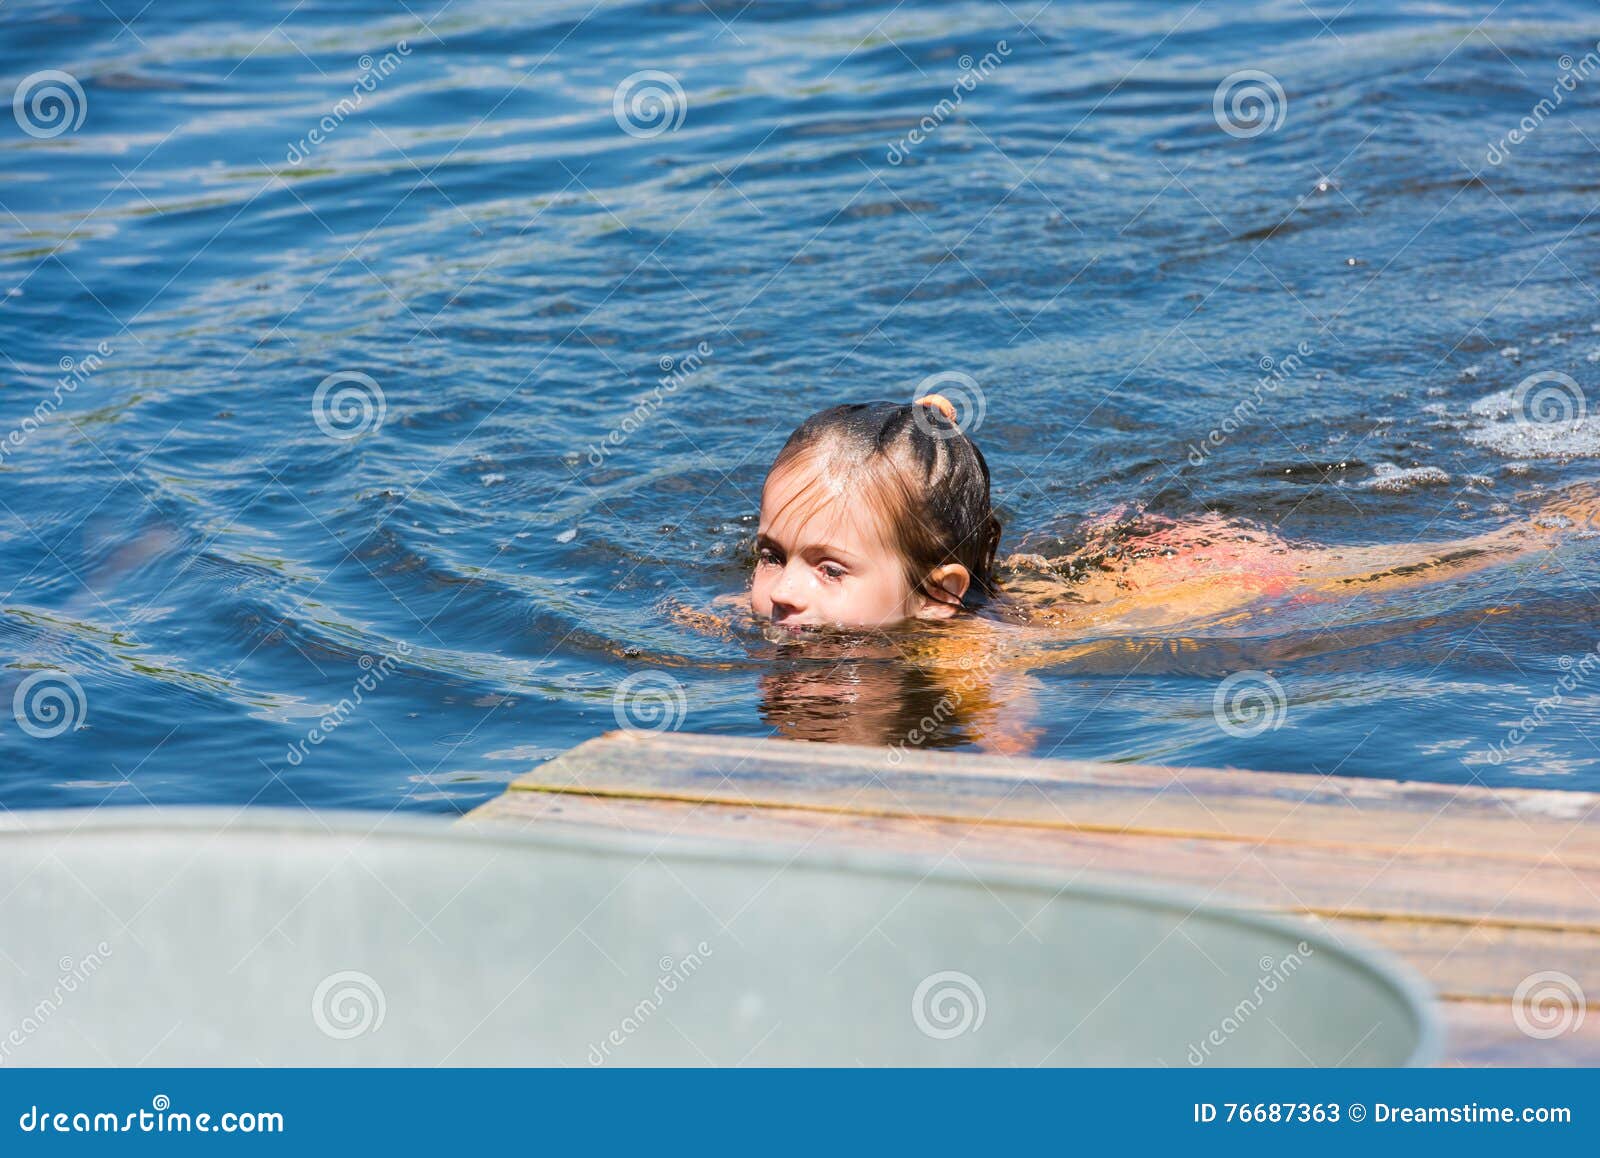 Kleines Mädchen Badet Im See Stockbild Bild Von Badet Mädchen 76687363